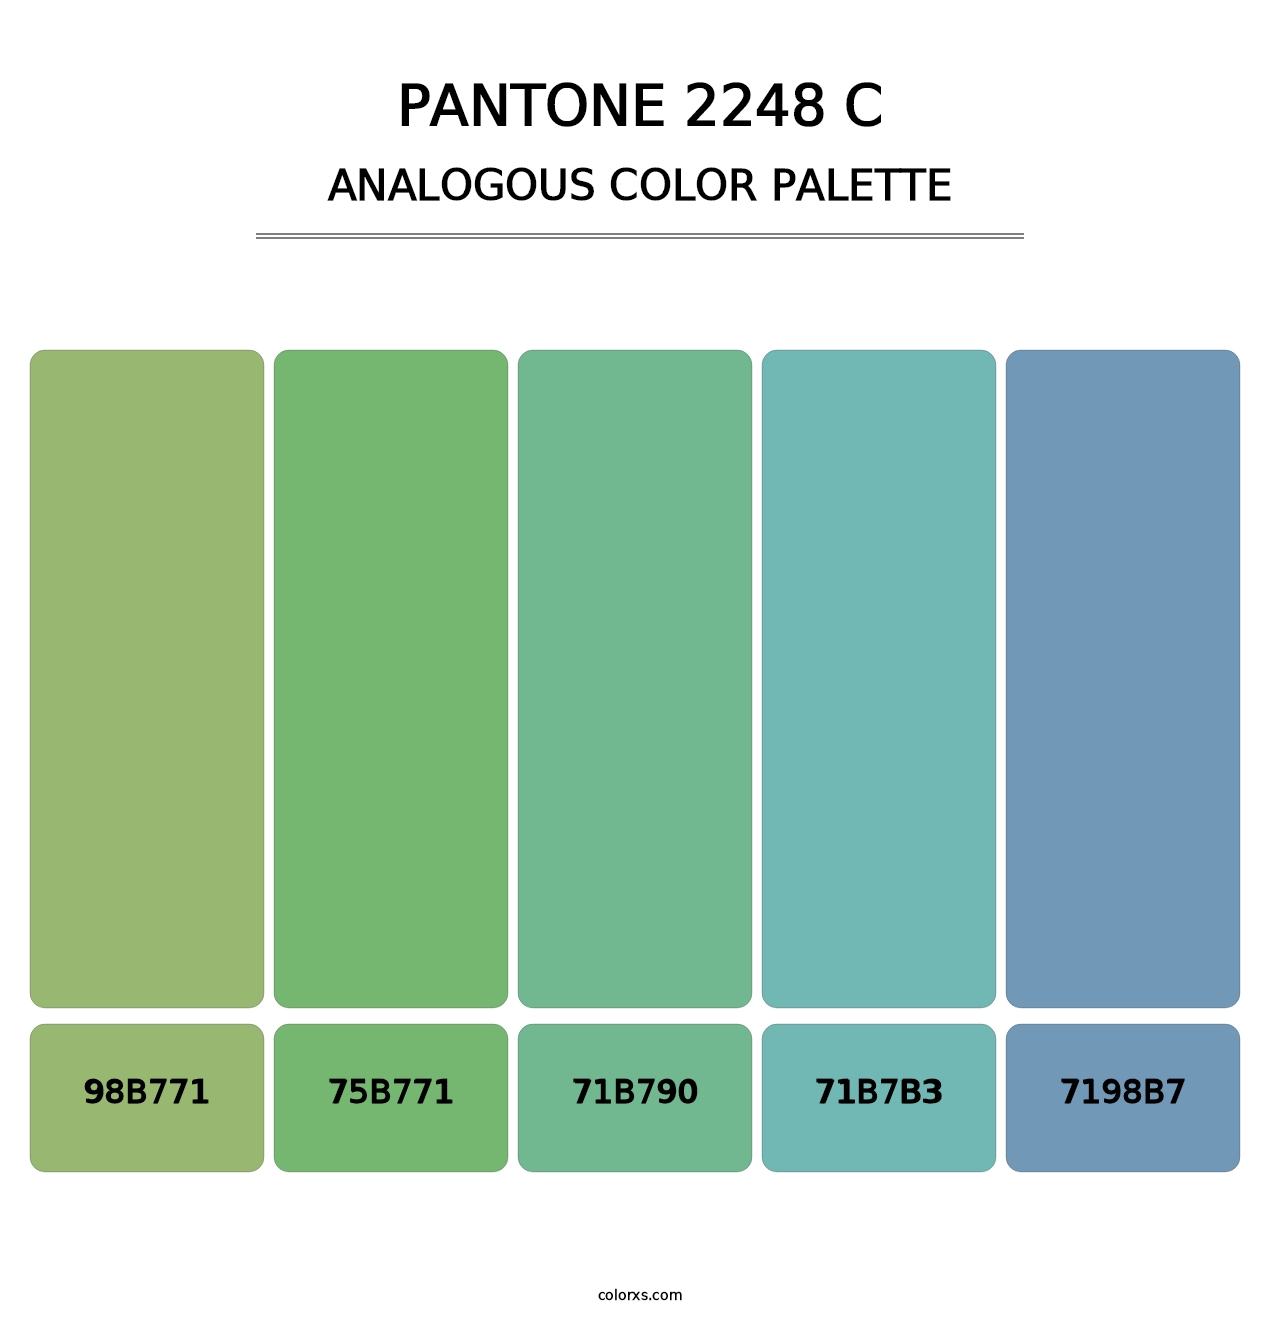 PANTONE 2248 C - Analogous Color Palette